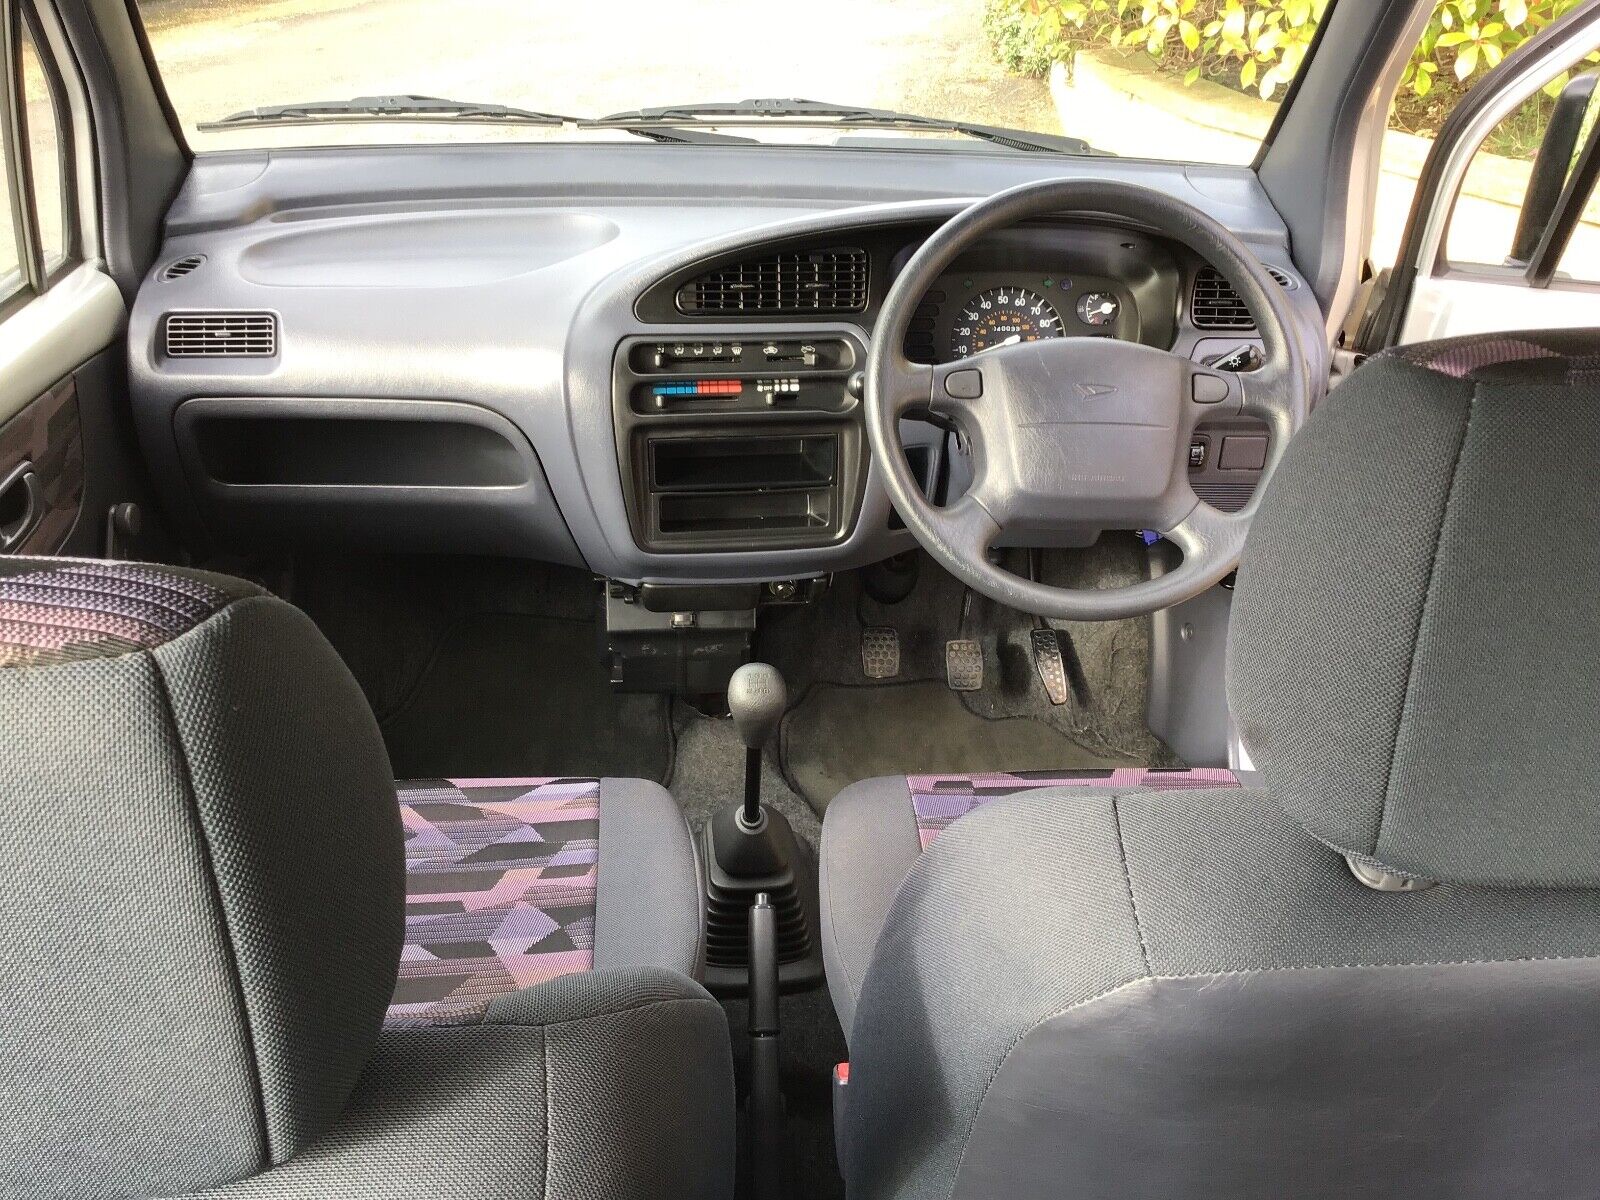 Daihatsu Move interior